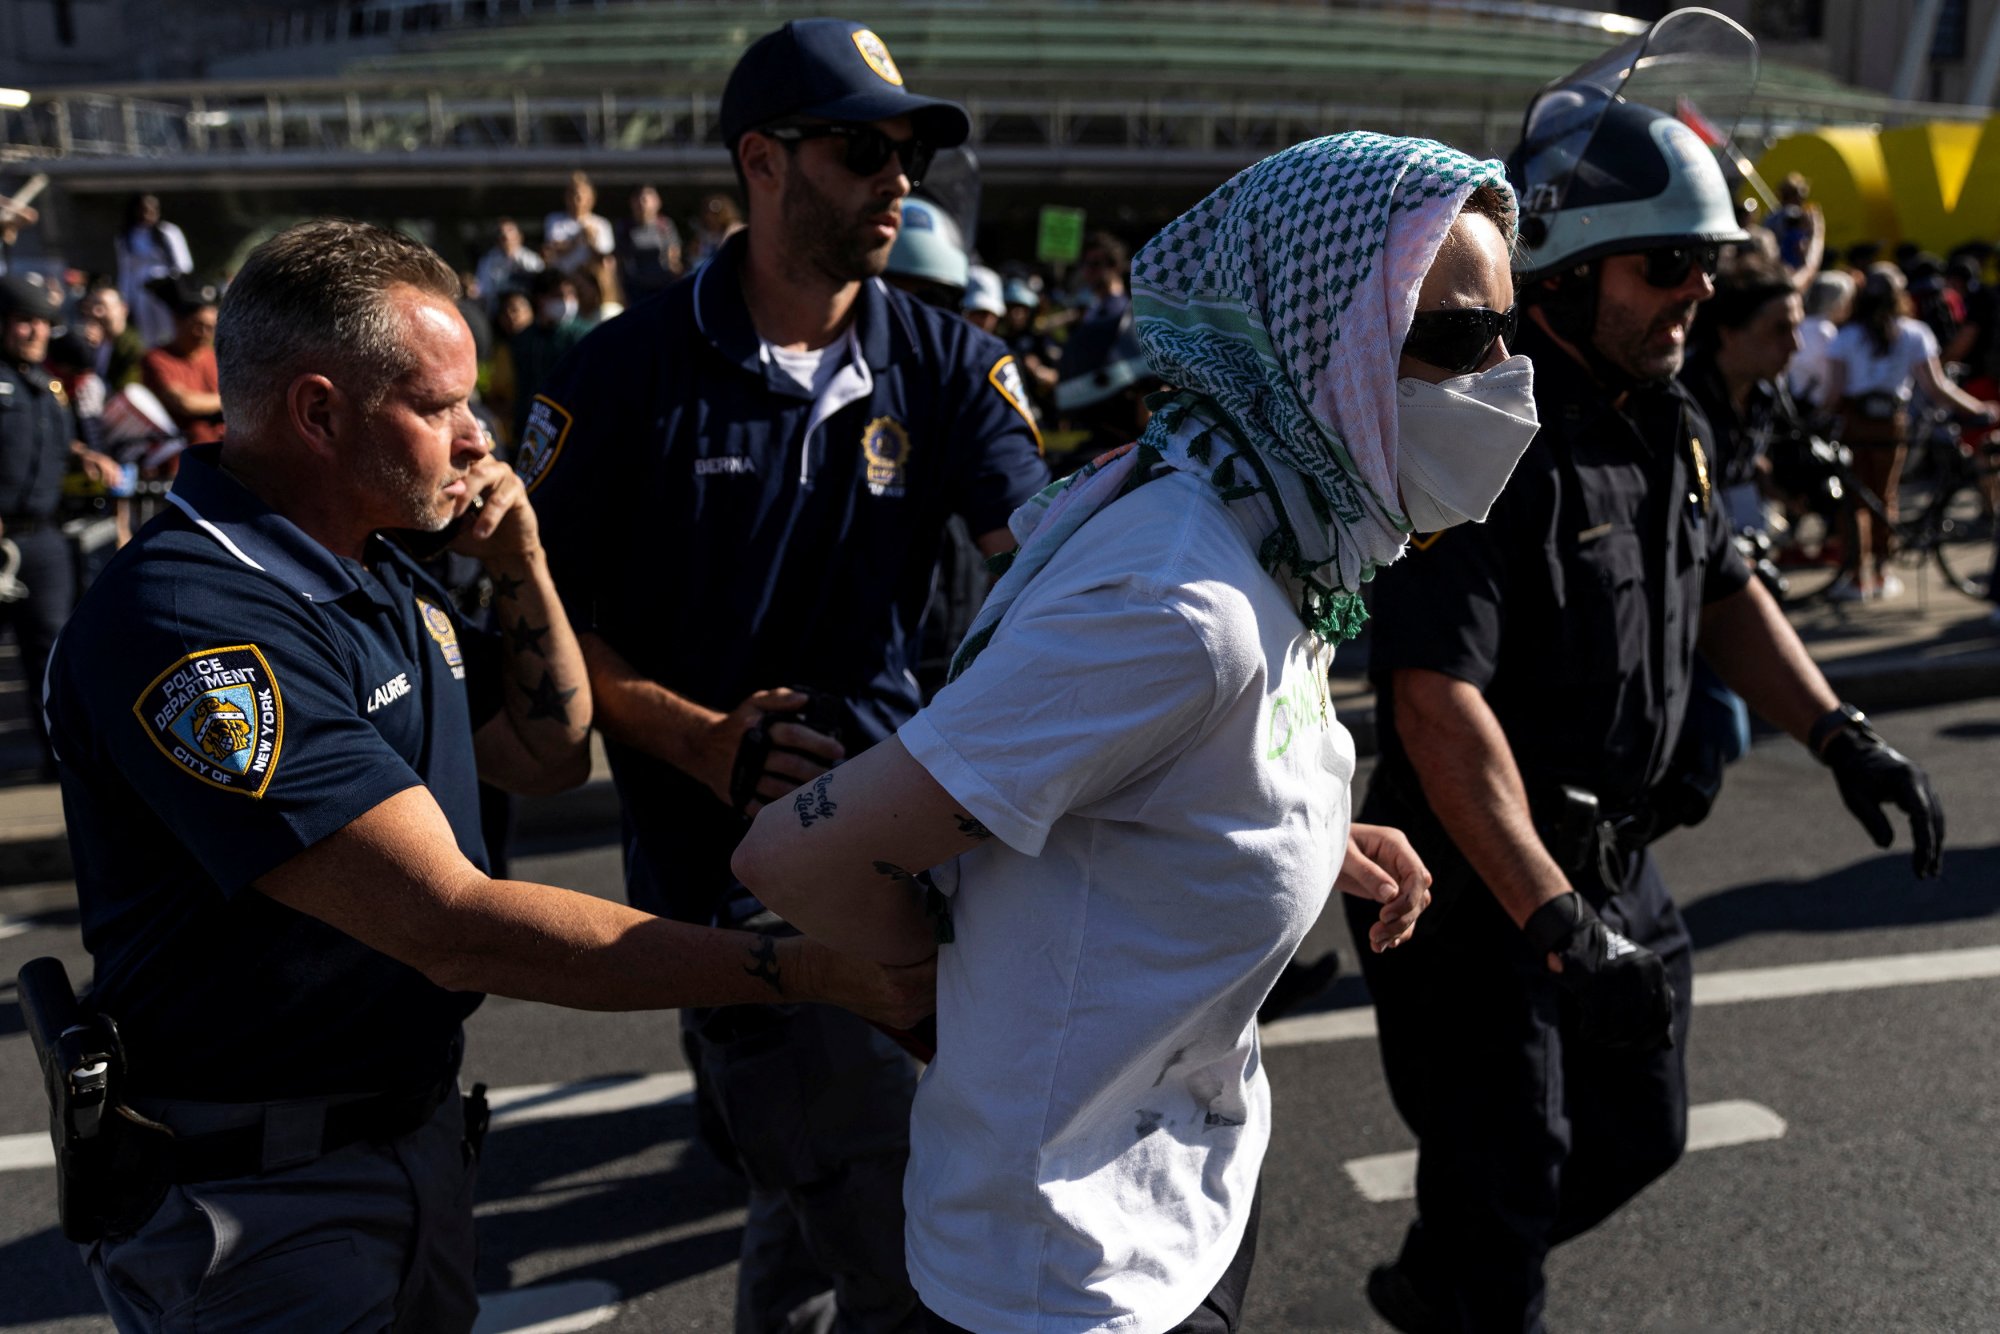 ΗΠΑ: Διαδηλωτές υπέρ της Παλαιστίνης εισέβαλαν σε μουσείο της Νέας Υόρκης – 22 συλλήψεις από την Αστυνομία